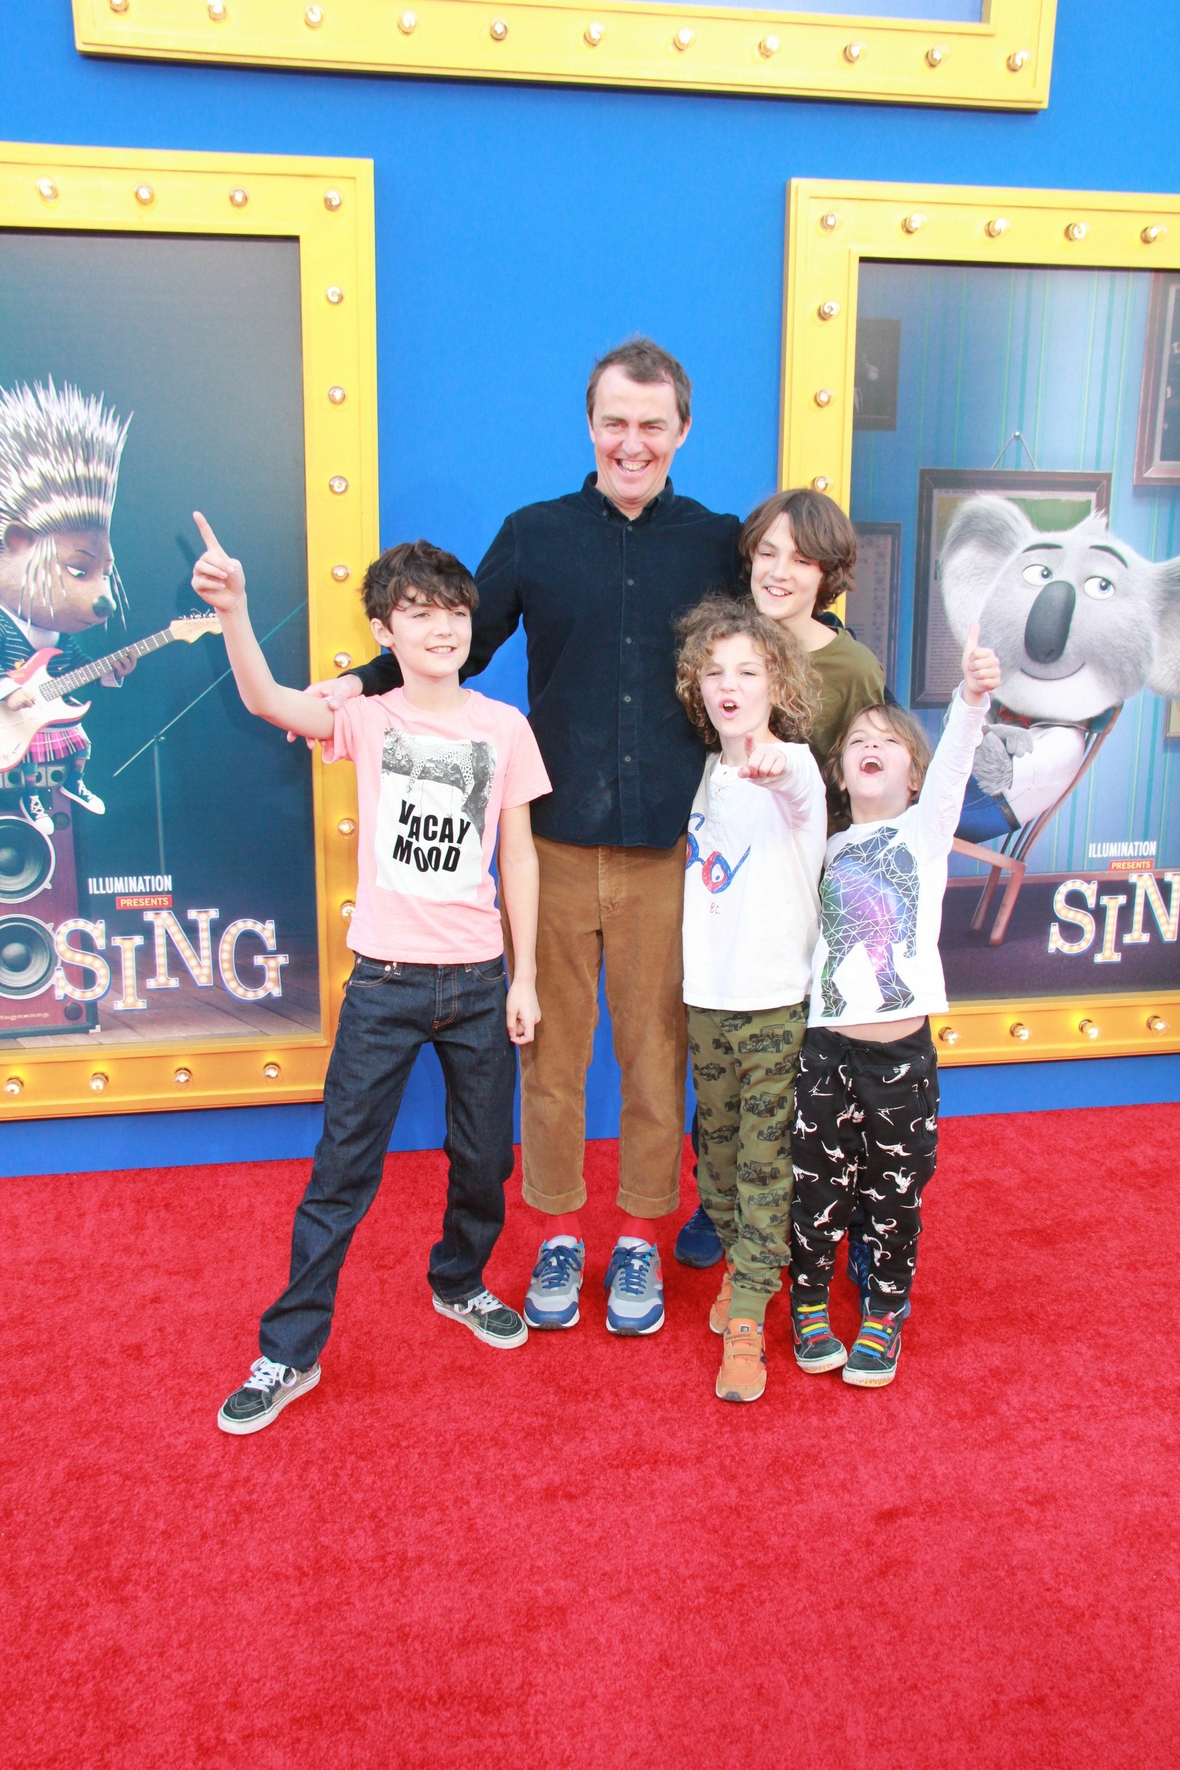 Der Regisseur Garth Jennings umringt von vier begeisterten Kindern bei der Weltpremiere des Films in den USA. Im Hintergrund sind Plakate des Films zu sehen.